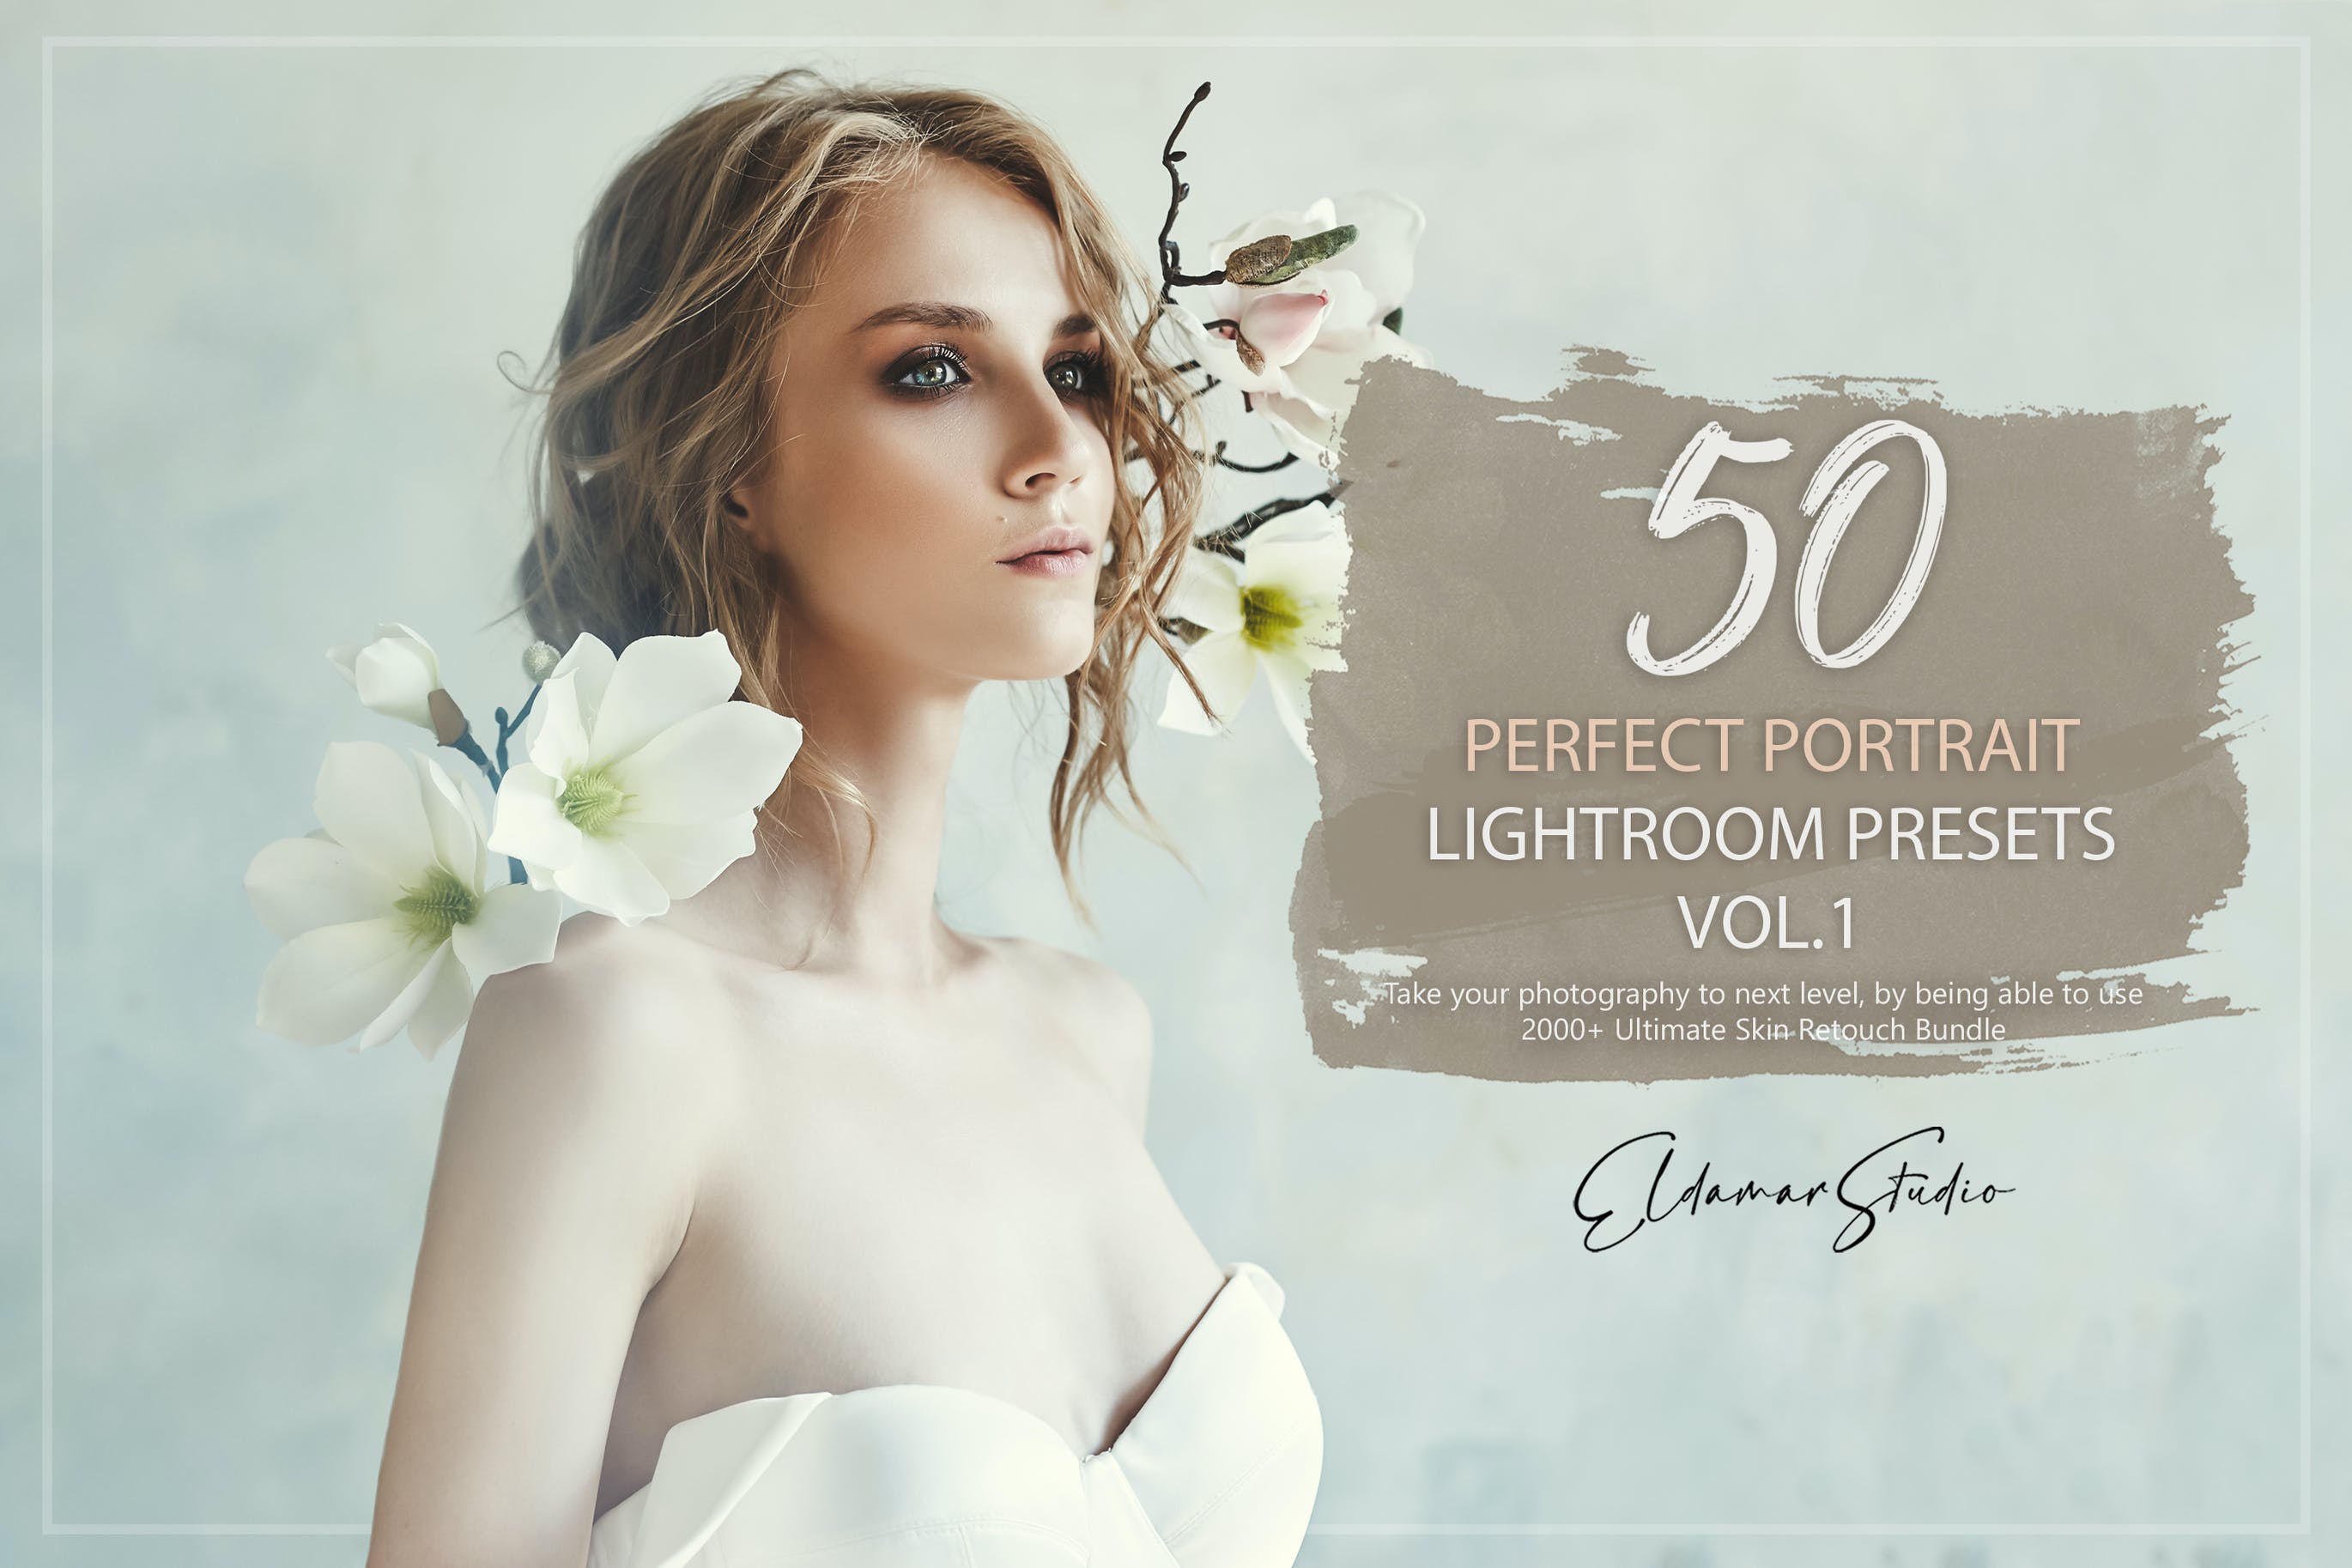 50个人物肖像照片后期修图LR预设v1 50 Perfect Portrait Lightroom Presets – Vol. 1 插件预设 第1张